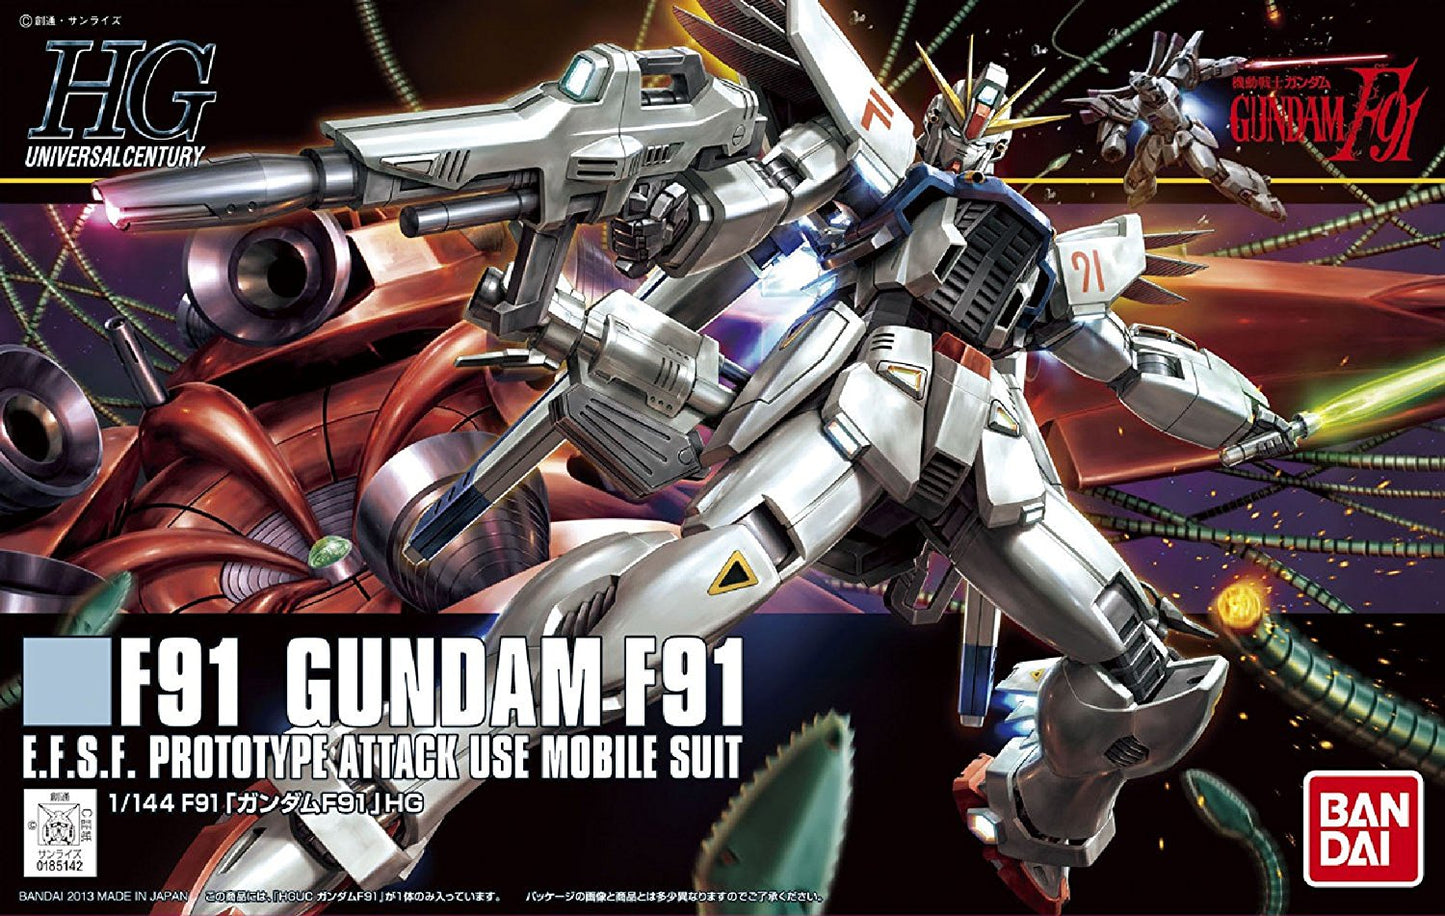 Bandai Perfect Grade F91 Mobile Suit Gundam Metal Build Kit